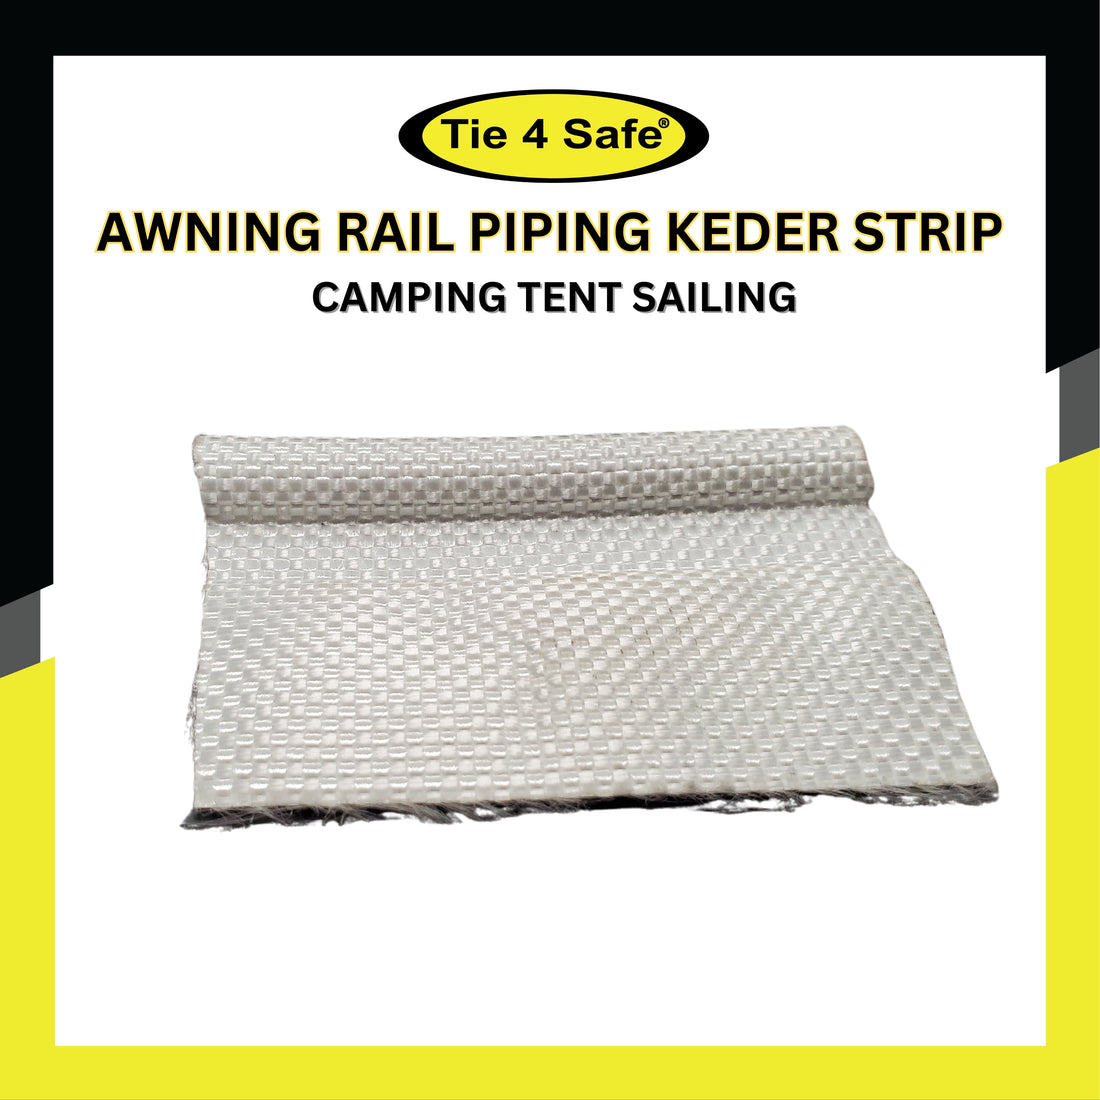 Awning Rail Piping Keder Strip